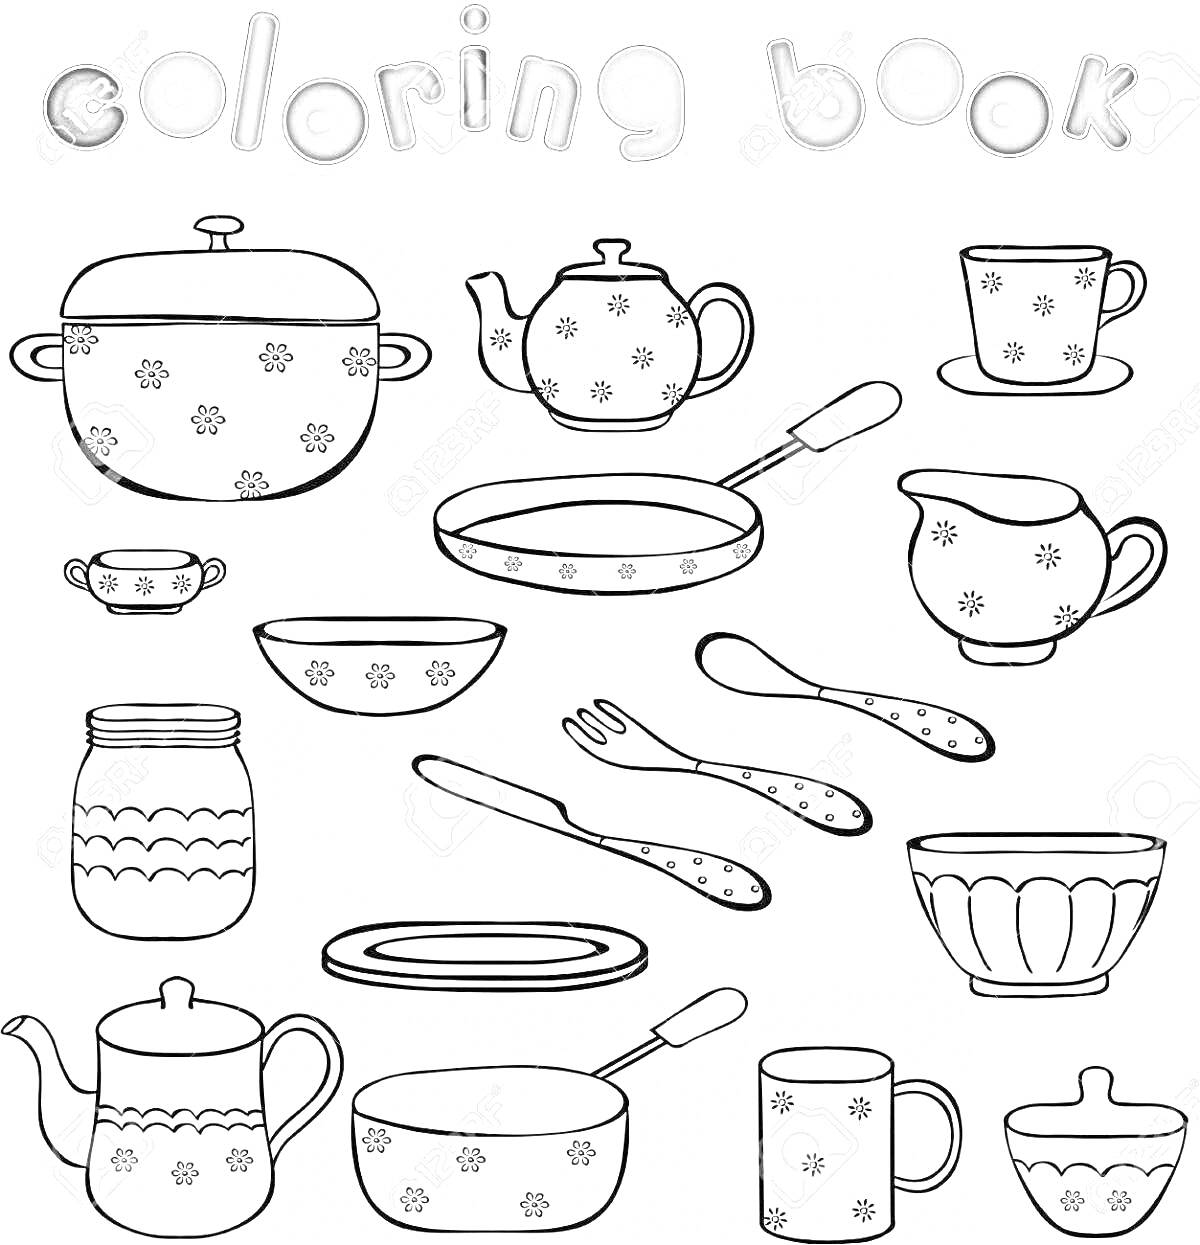 Раскраска: кастрюля с крышкой, чайник, чашка с блюдцем, соусник, сковорода, миска, нож, вилка, кувшин, банка, глубокая тарелка, чайная пара, блюдо, половник, кружка, миска с крышкой